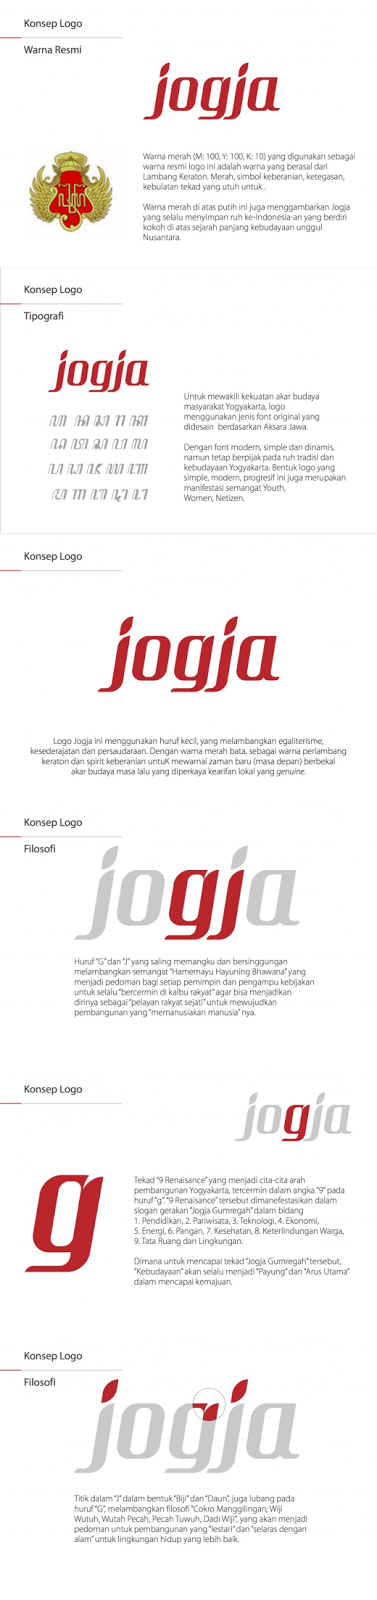 Kontroversi Mengenai Logo Baru Yogyakarta, Berita Terkini Jogja